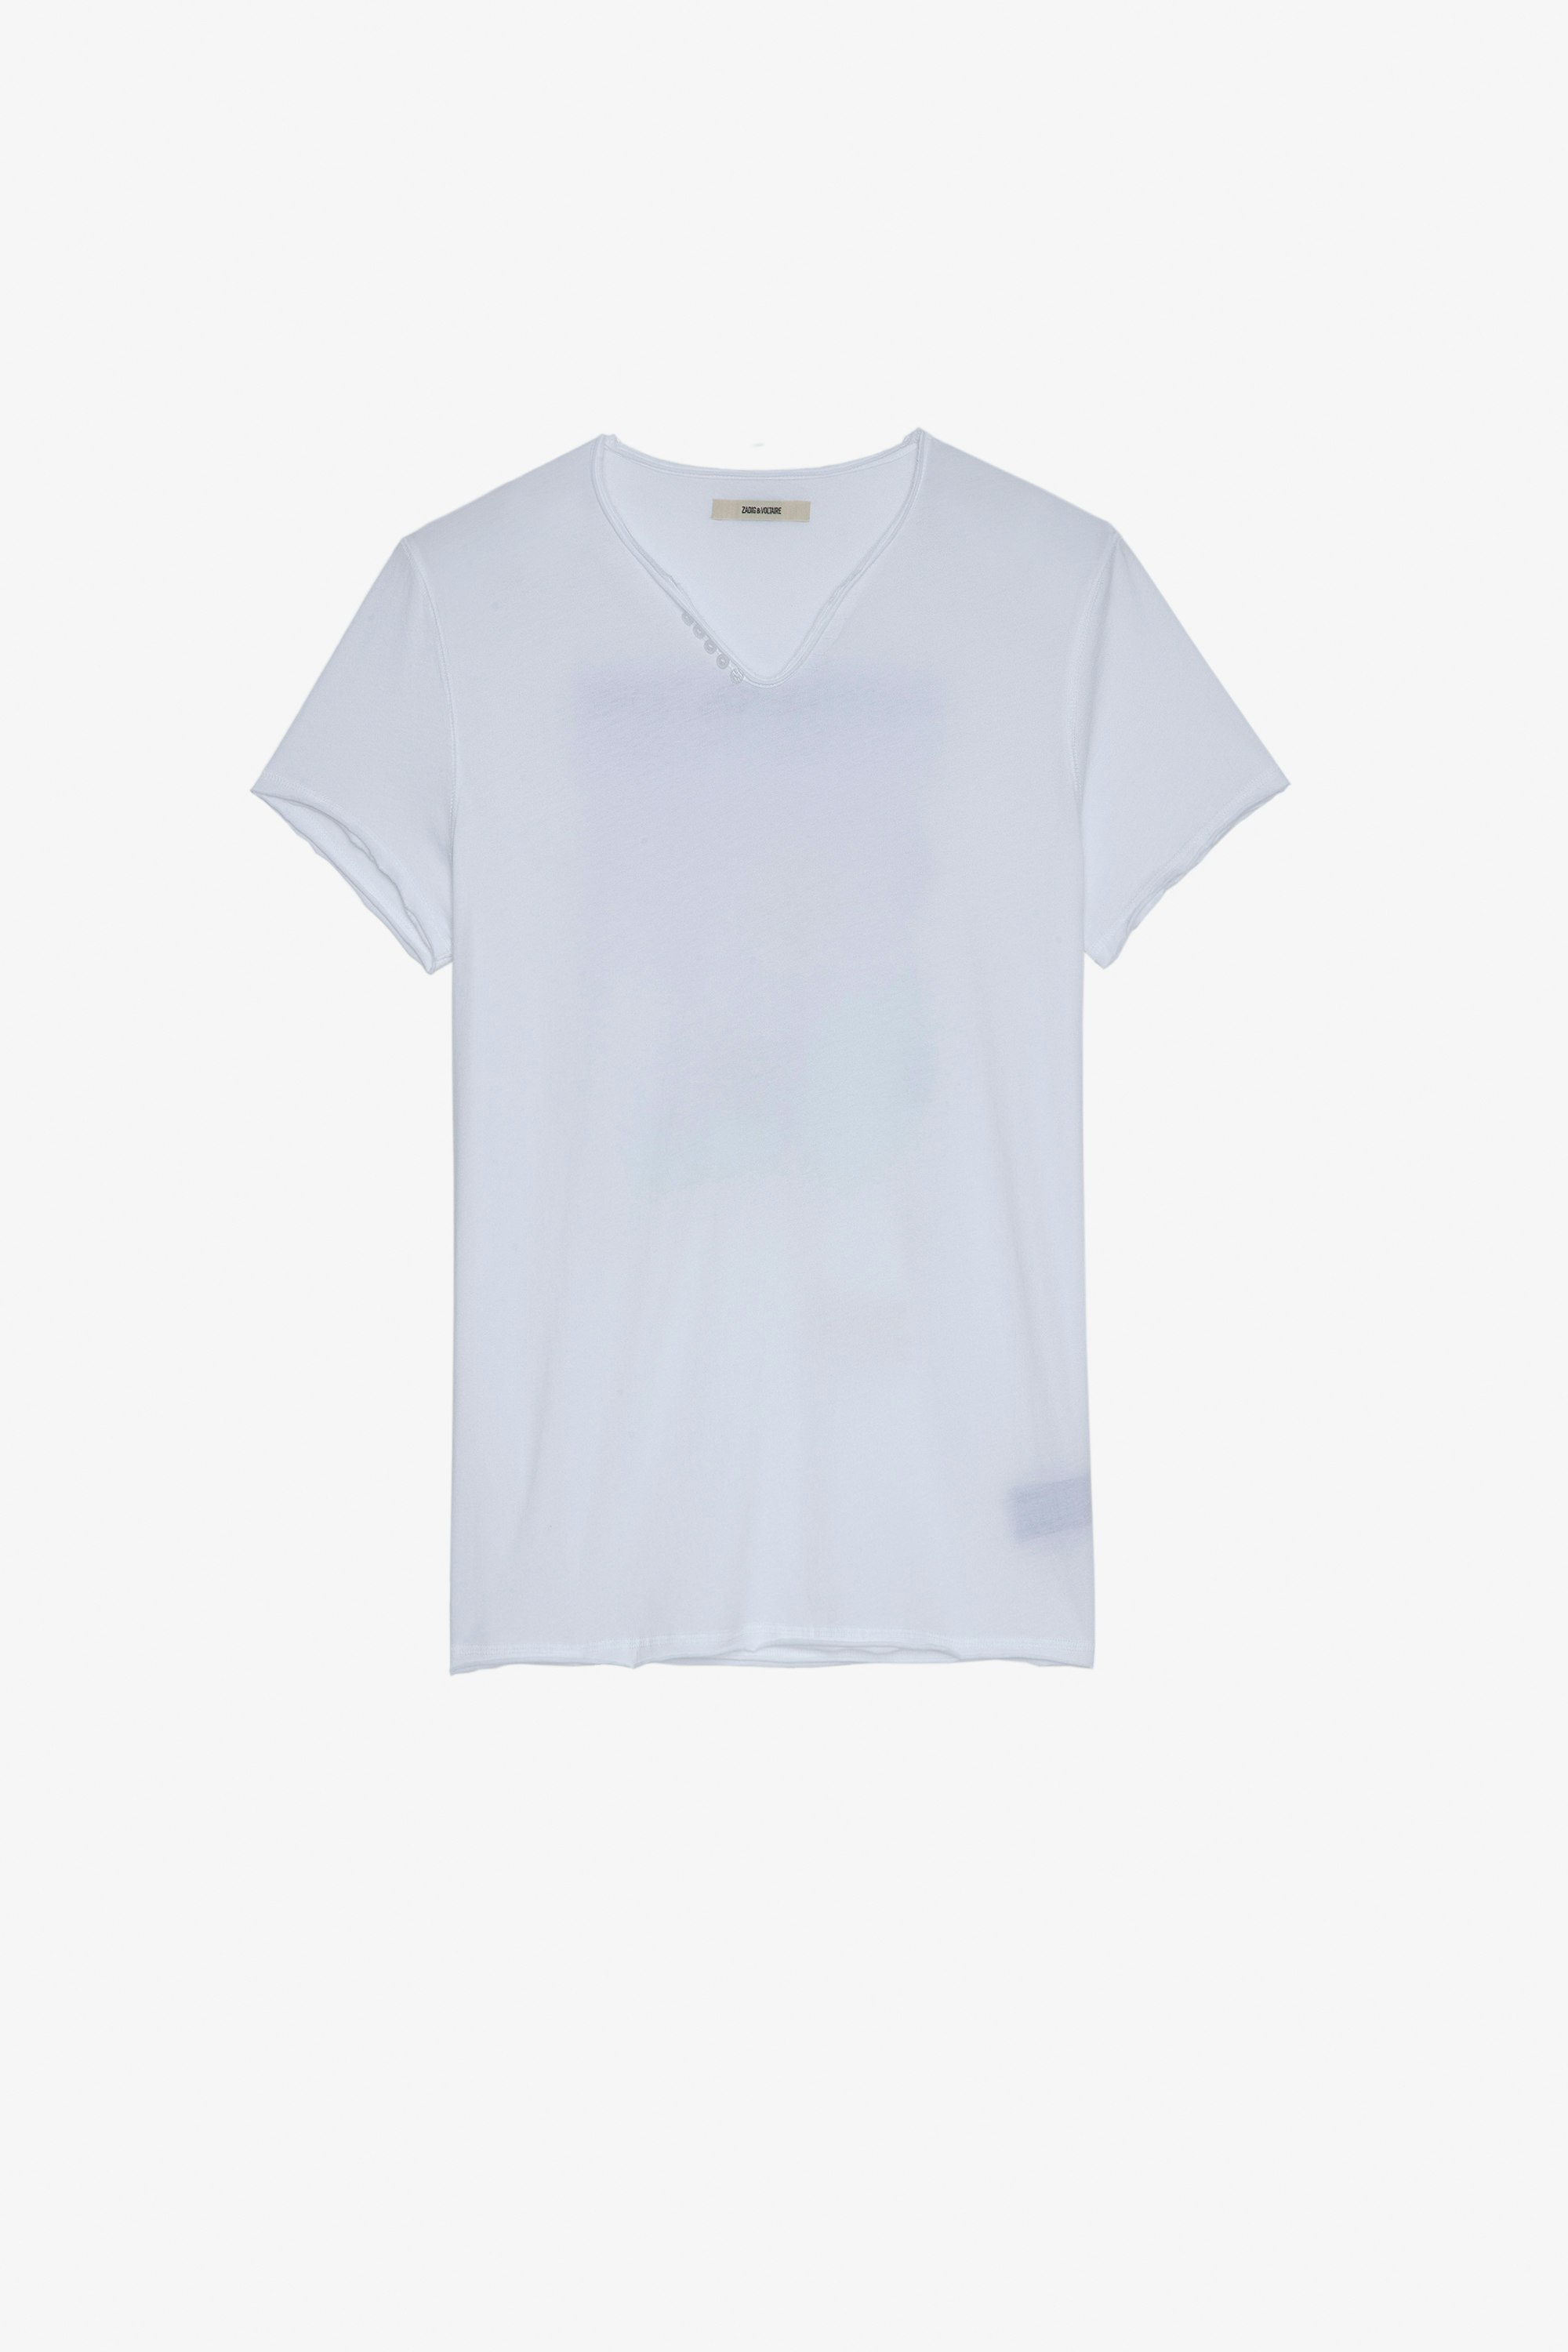 T-shirt Monastir T-shirt in cotone bianco con collo a serafino e stampa fotografica palma sul retro - Uomo